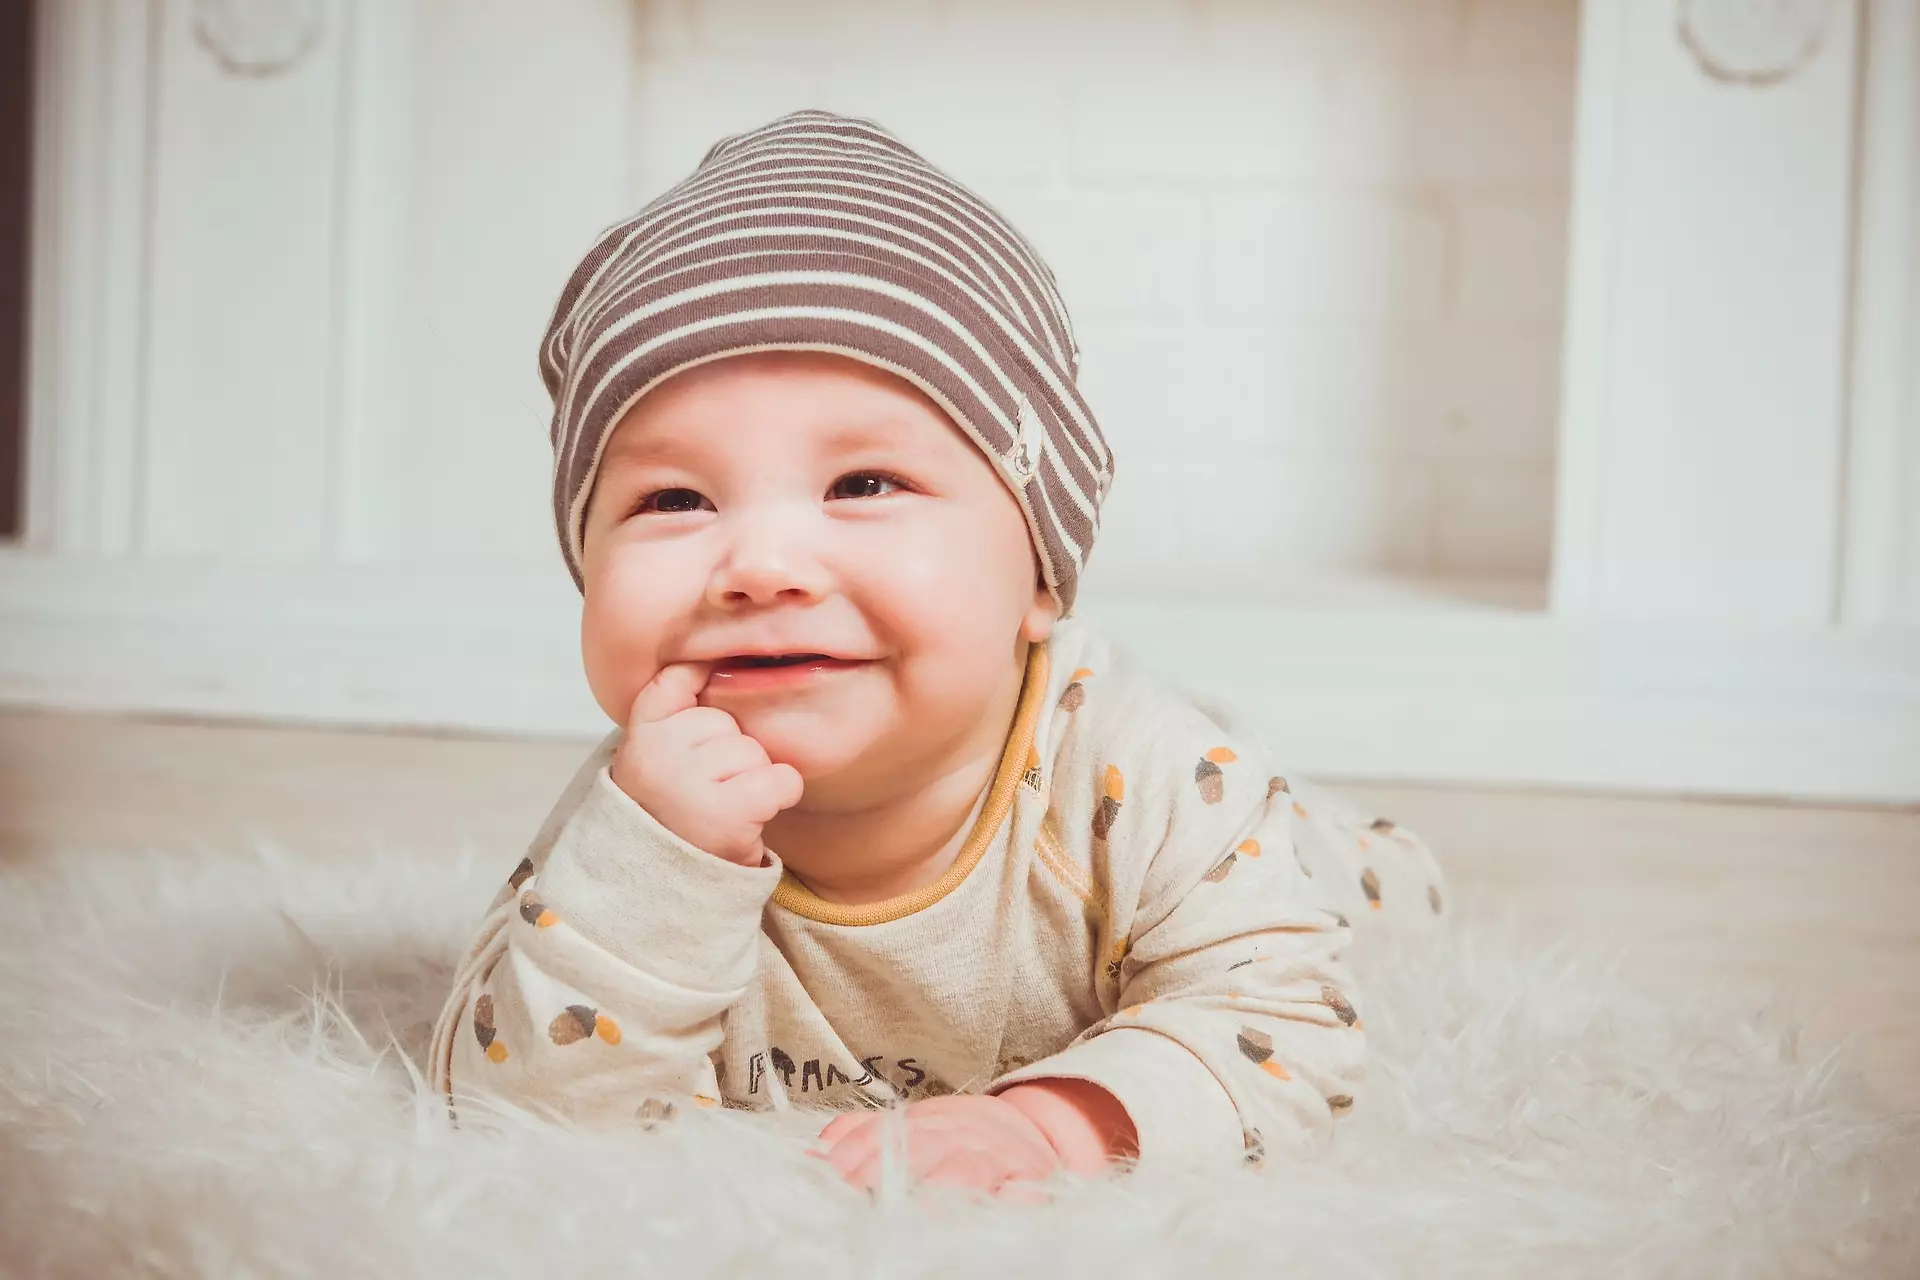 Доглядати за зубами і ротом малюка потрібно з раннього дитинства